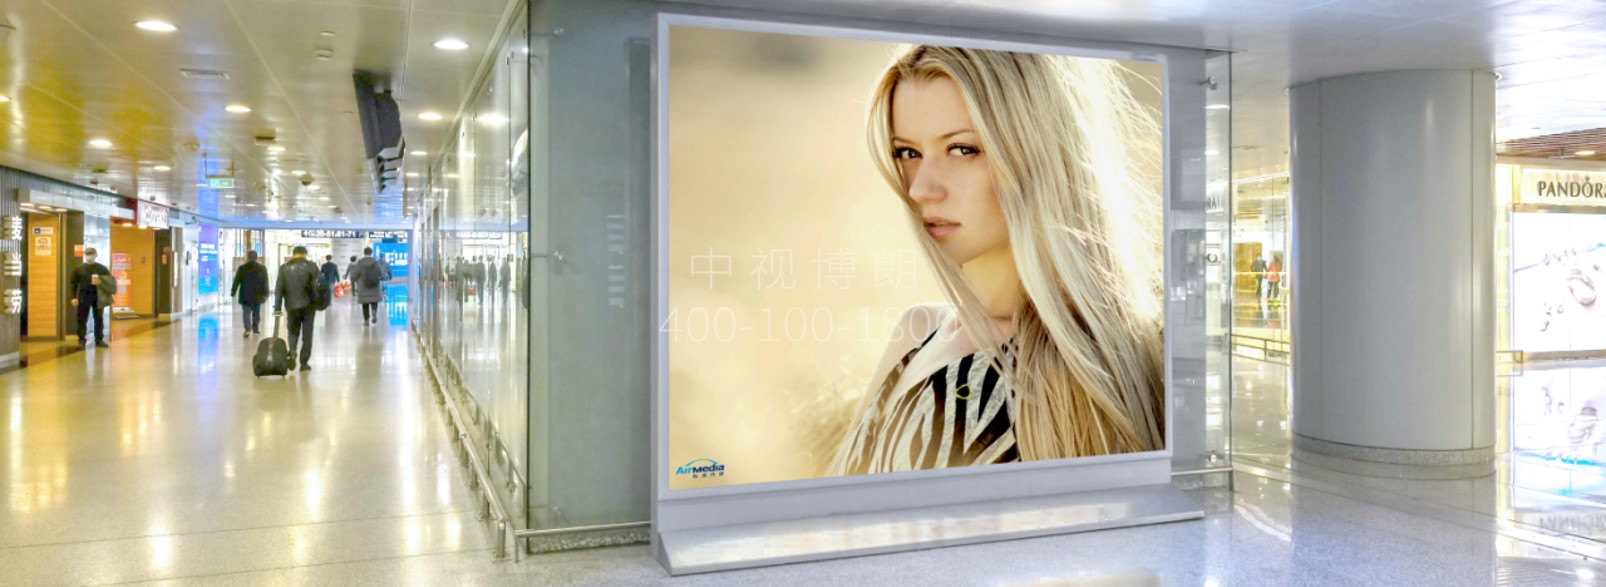 北京首都机场广告-T2 Domestic Departure Channel Light Box D008